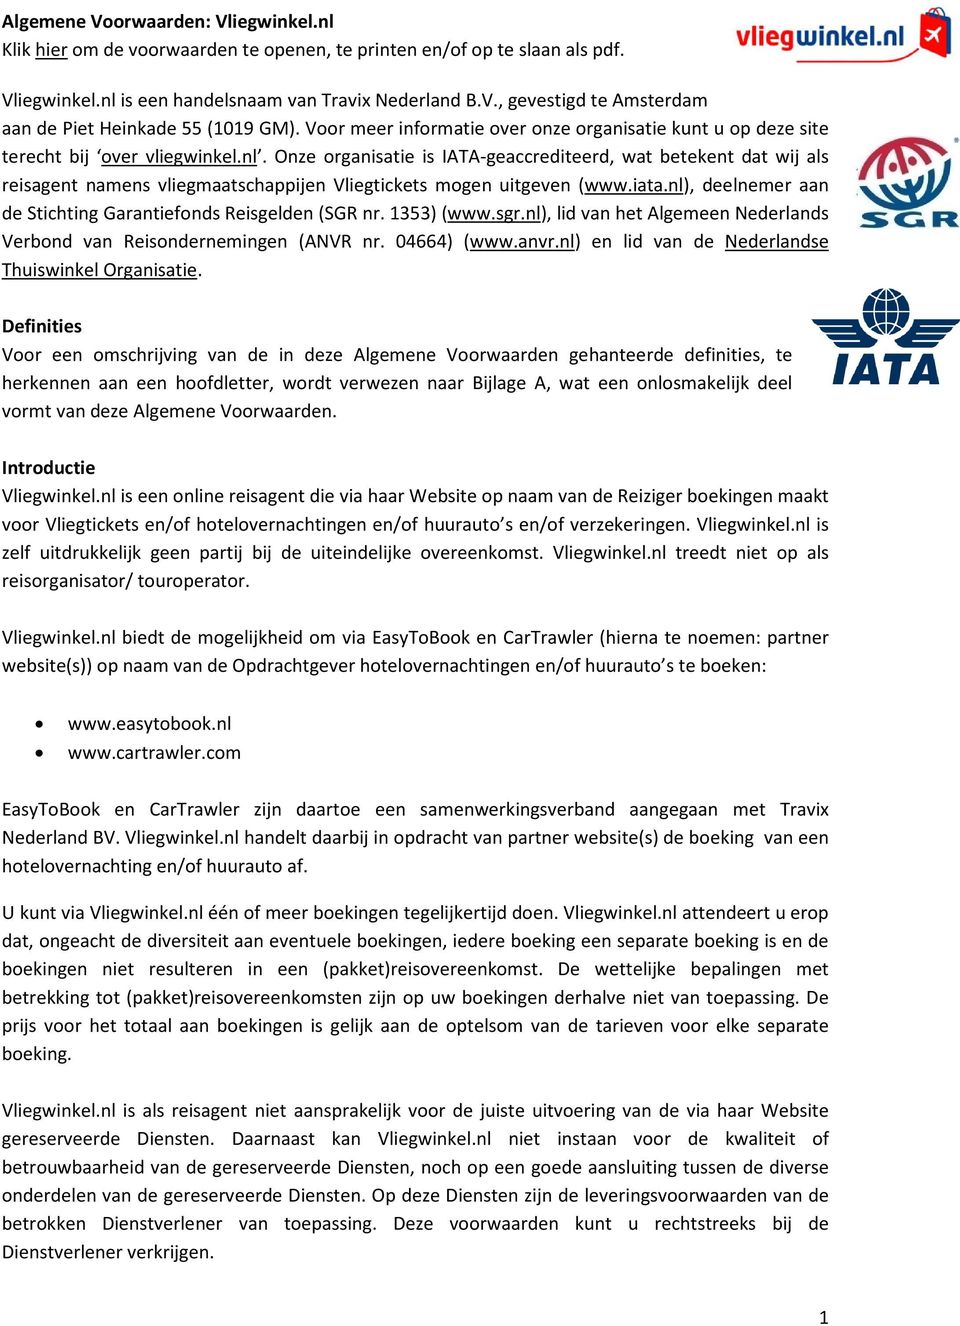 Onze organisatie is IATA-geaccrediteerd, wat betekent dat wij als reisagent namens vliegmaatschappijen Vliegtickets mogen uitgeven (www.iata.